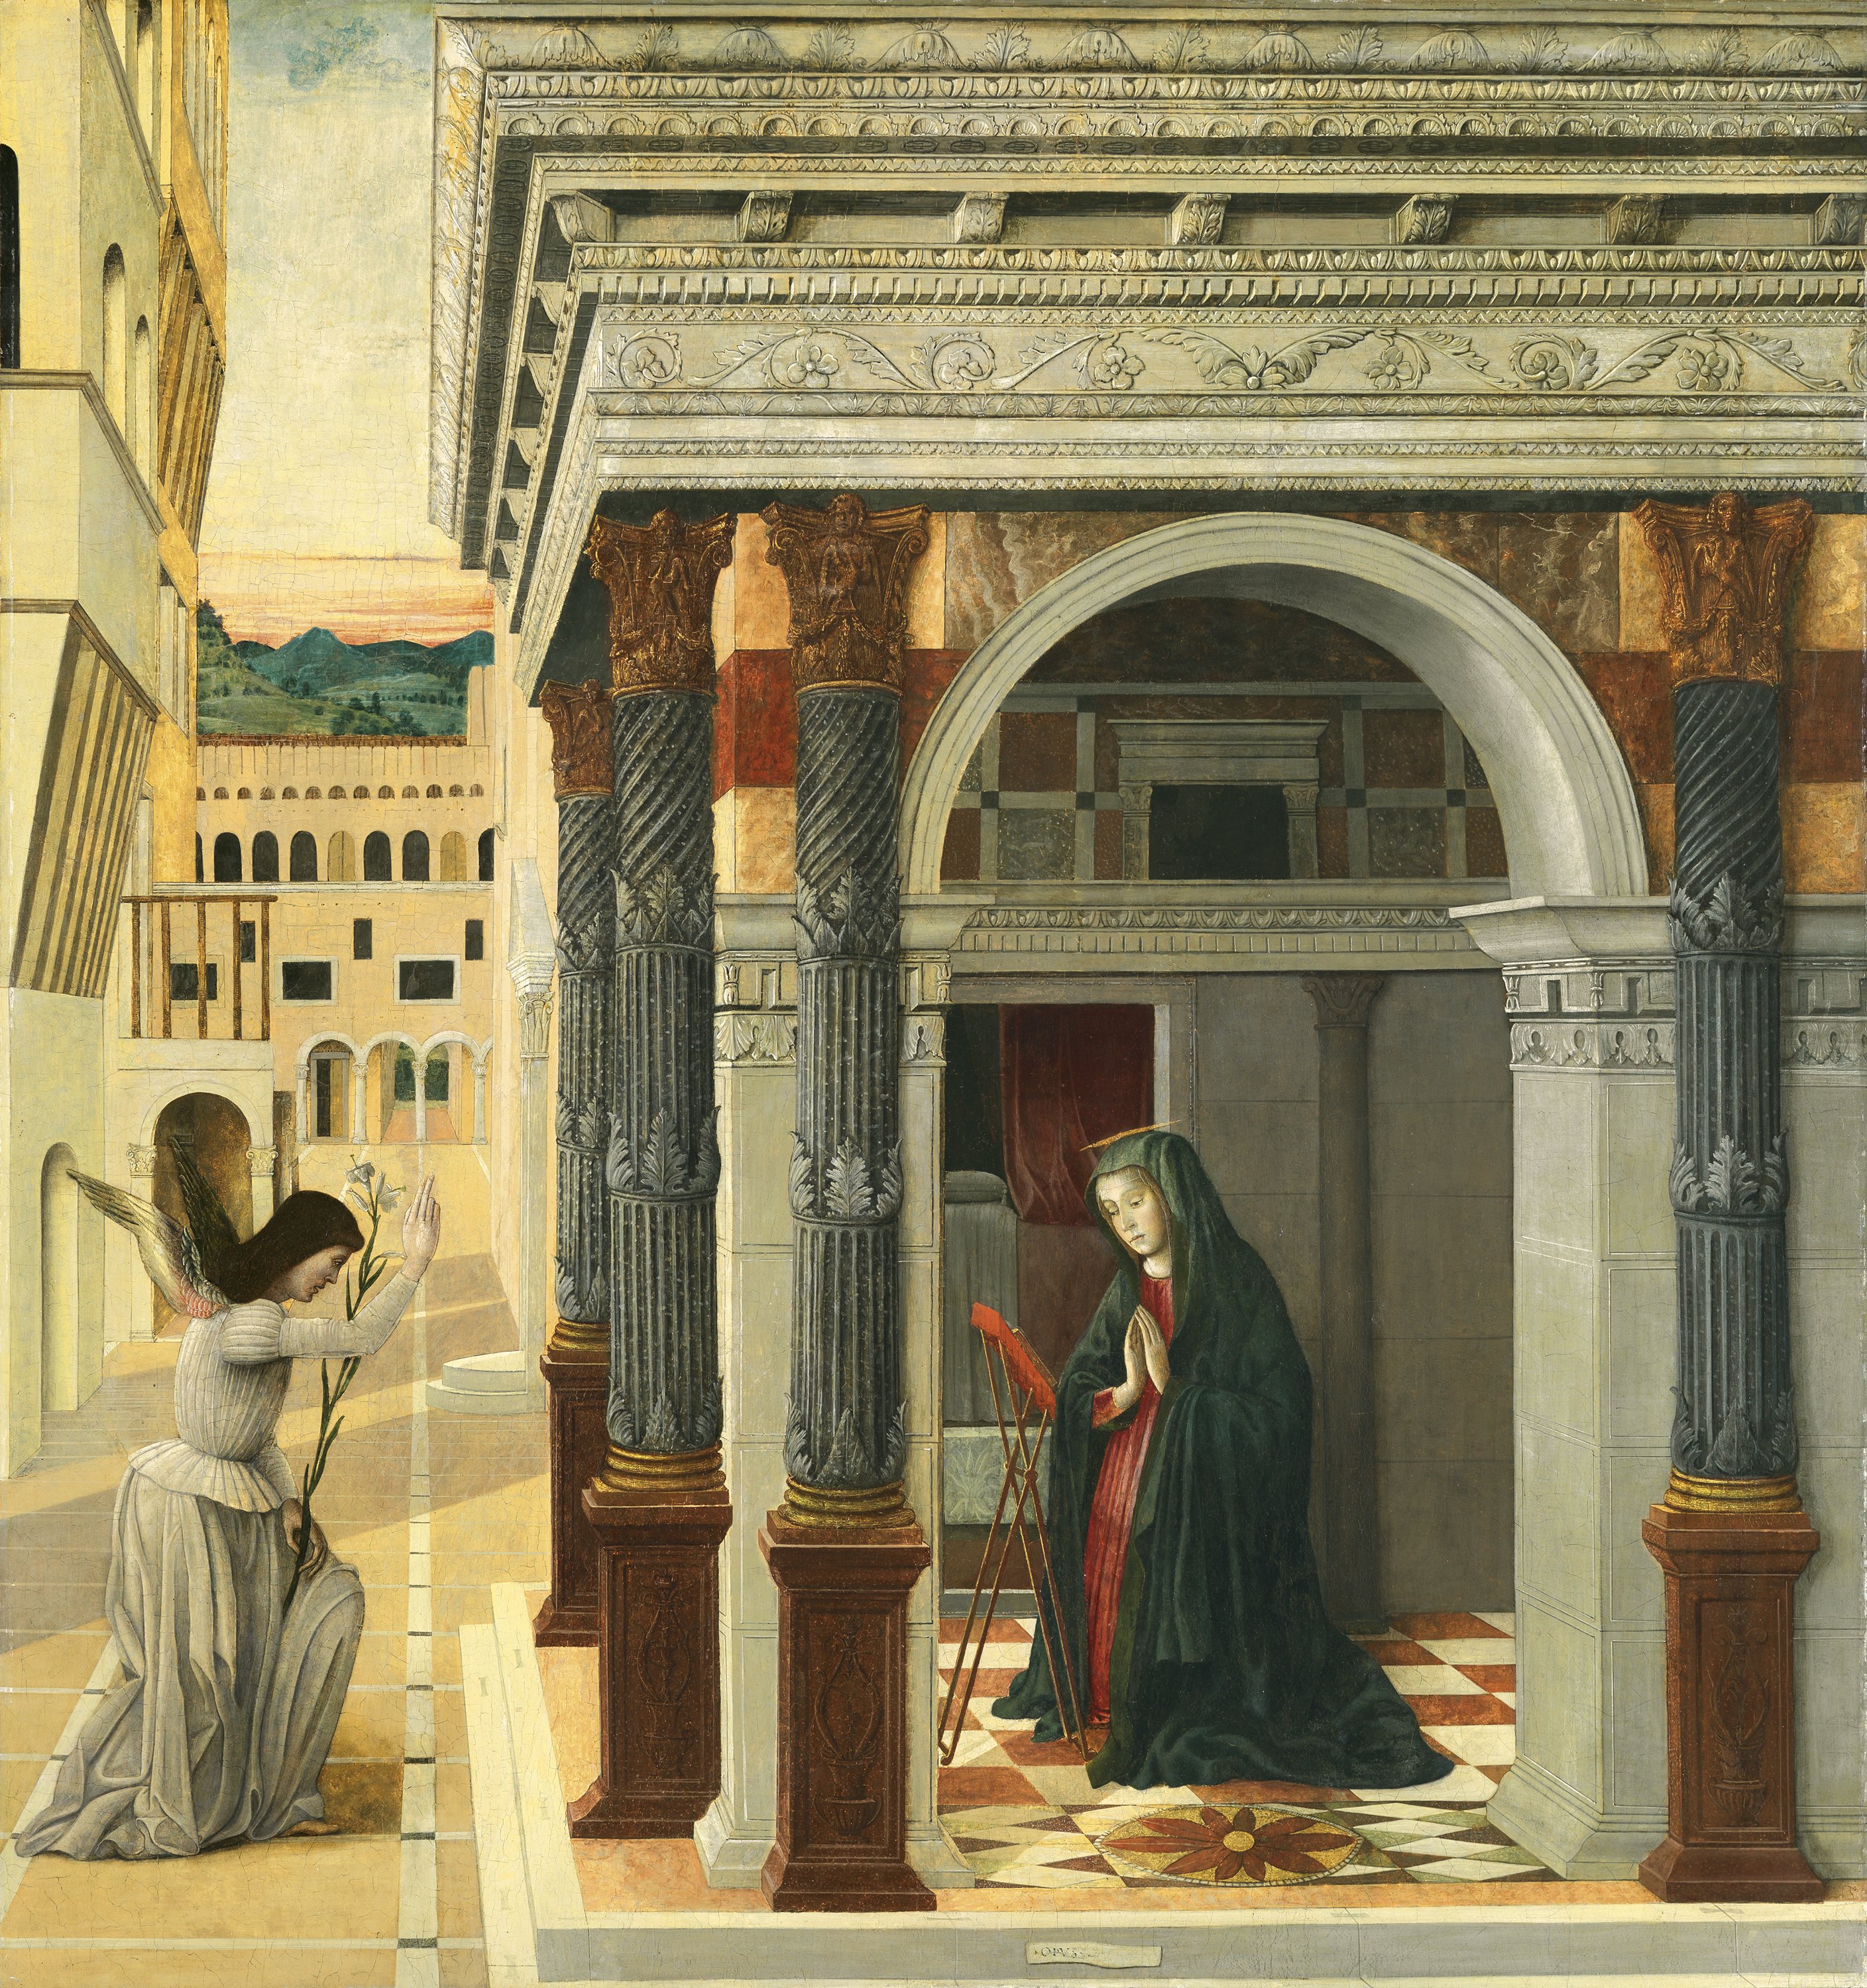 The Annunciation. La Anunciación, c. 1475